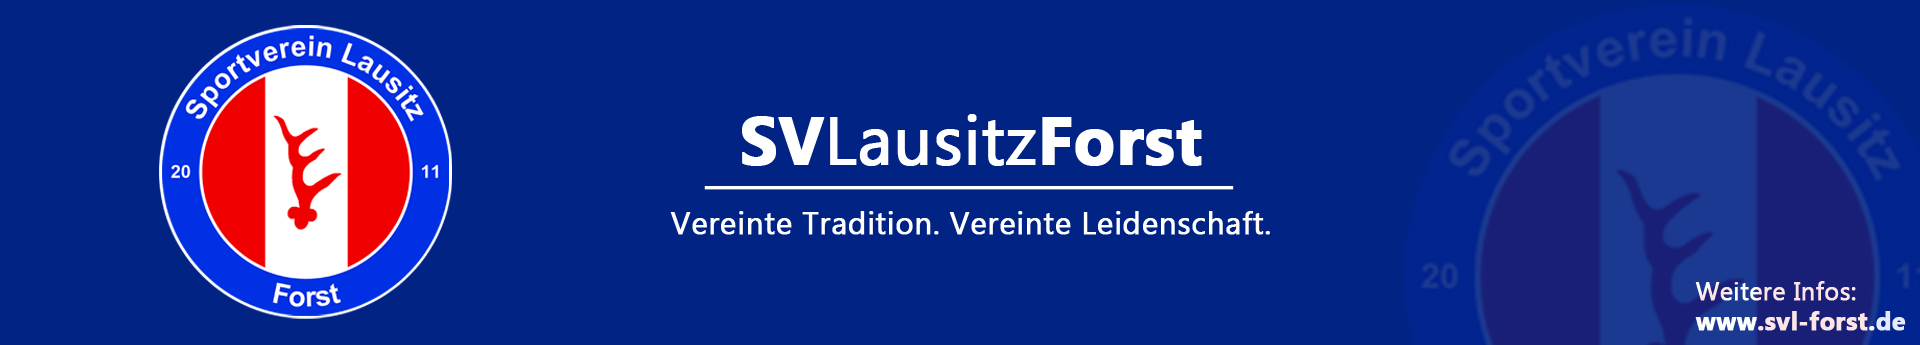 SV Lausitz Forst Title Image